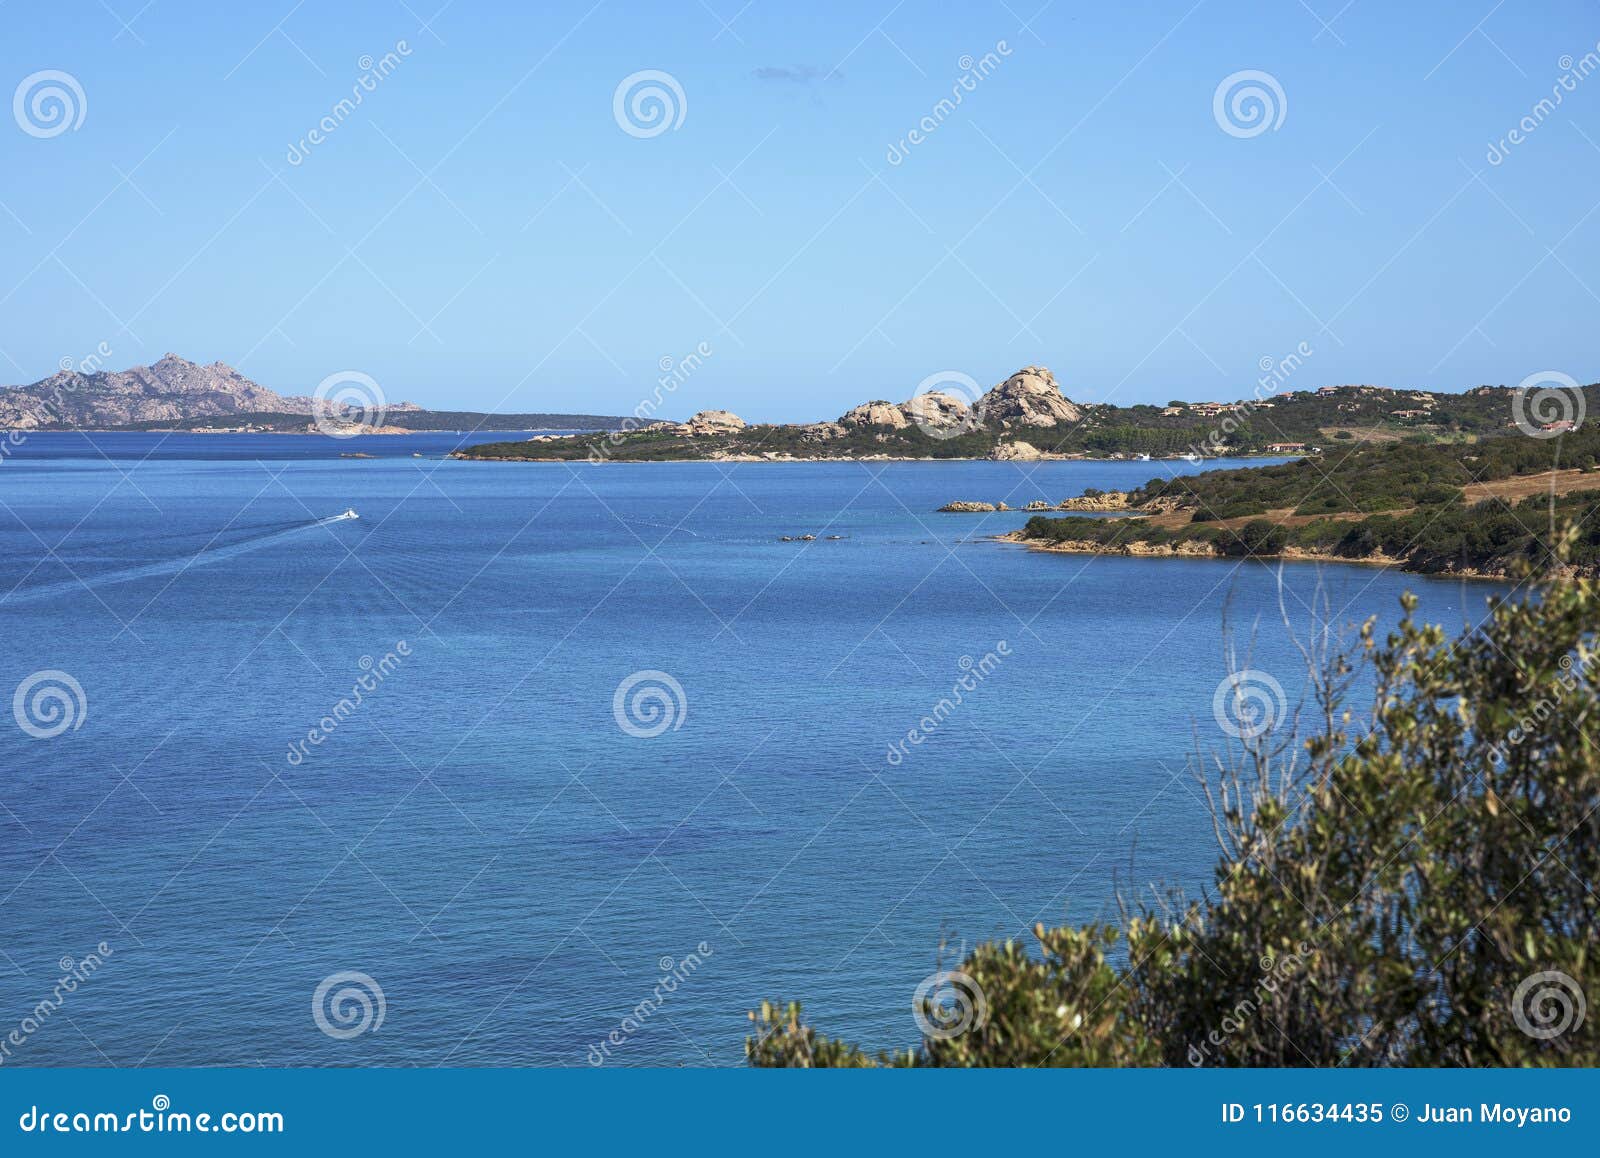 la maddalena, santo stefano and caprera islands